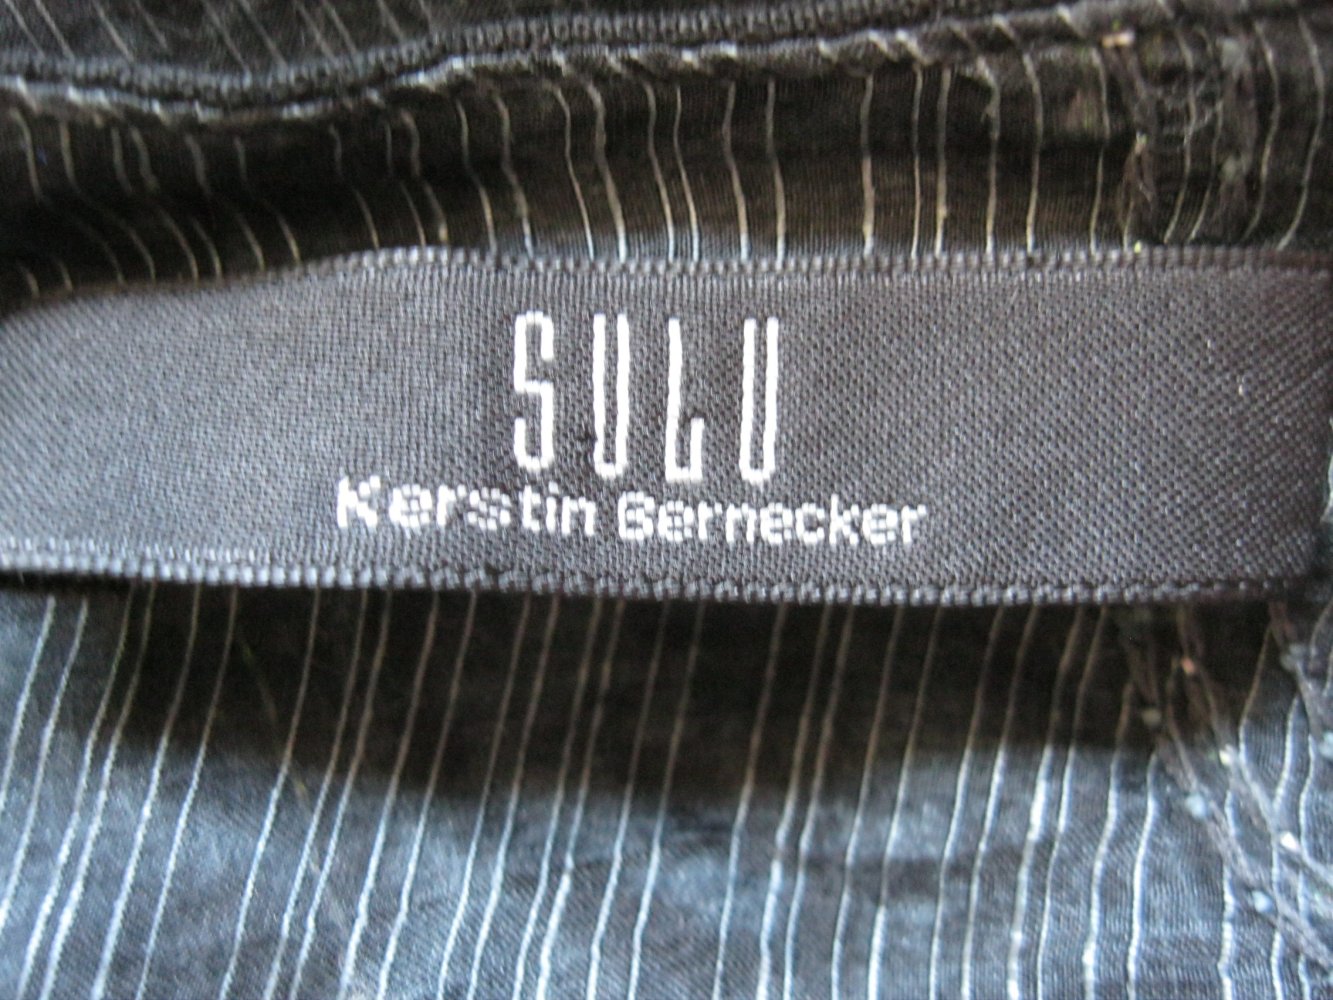 Sulu Kerstin Bernecker Bluse halbtransparent Seide/Leinen/Baumwolle Schwarz/Metallic 42/44